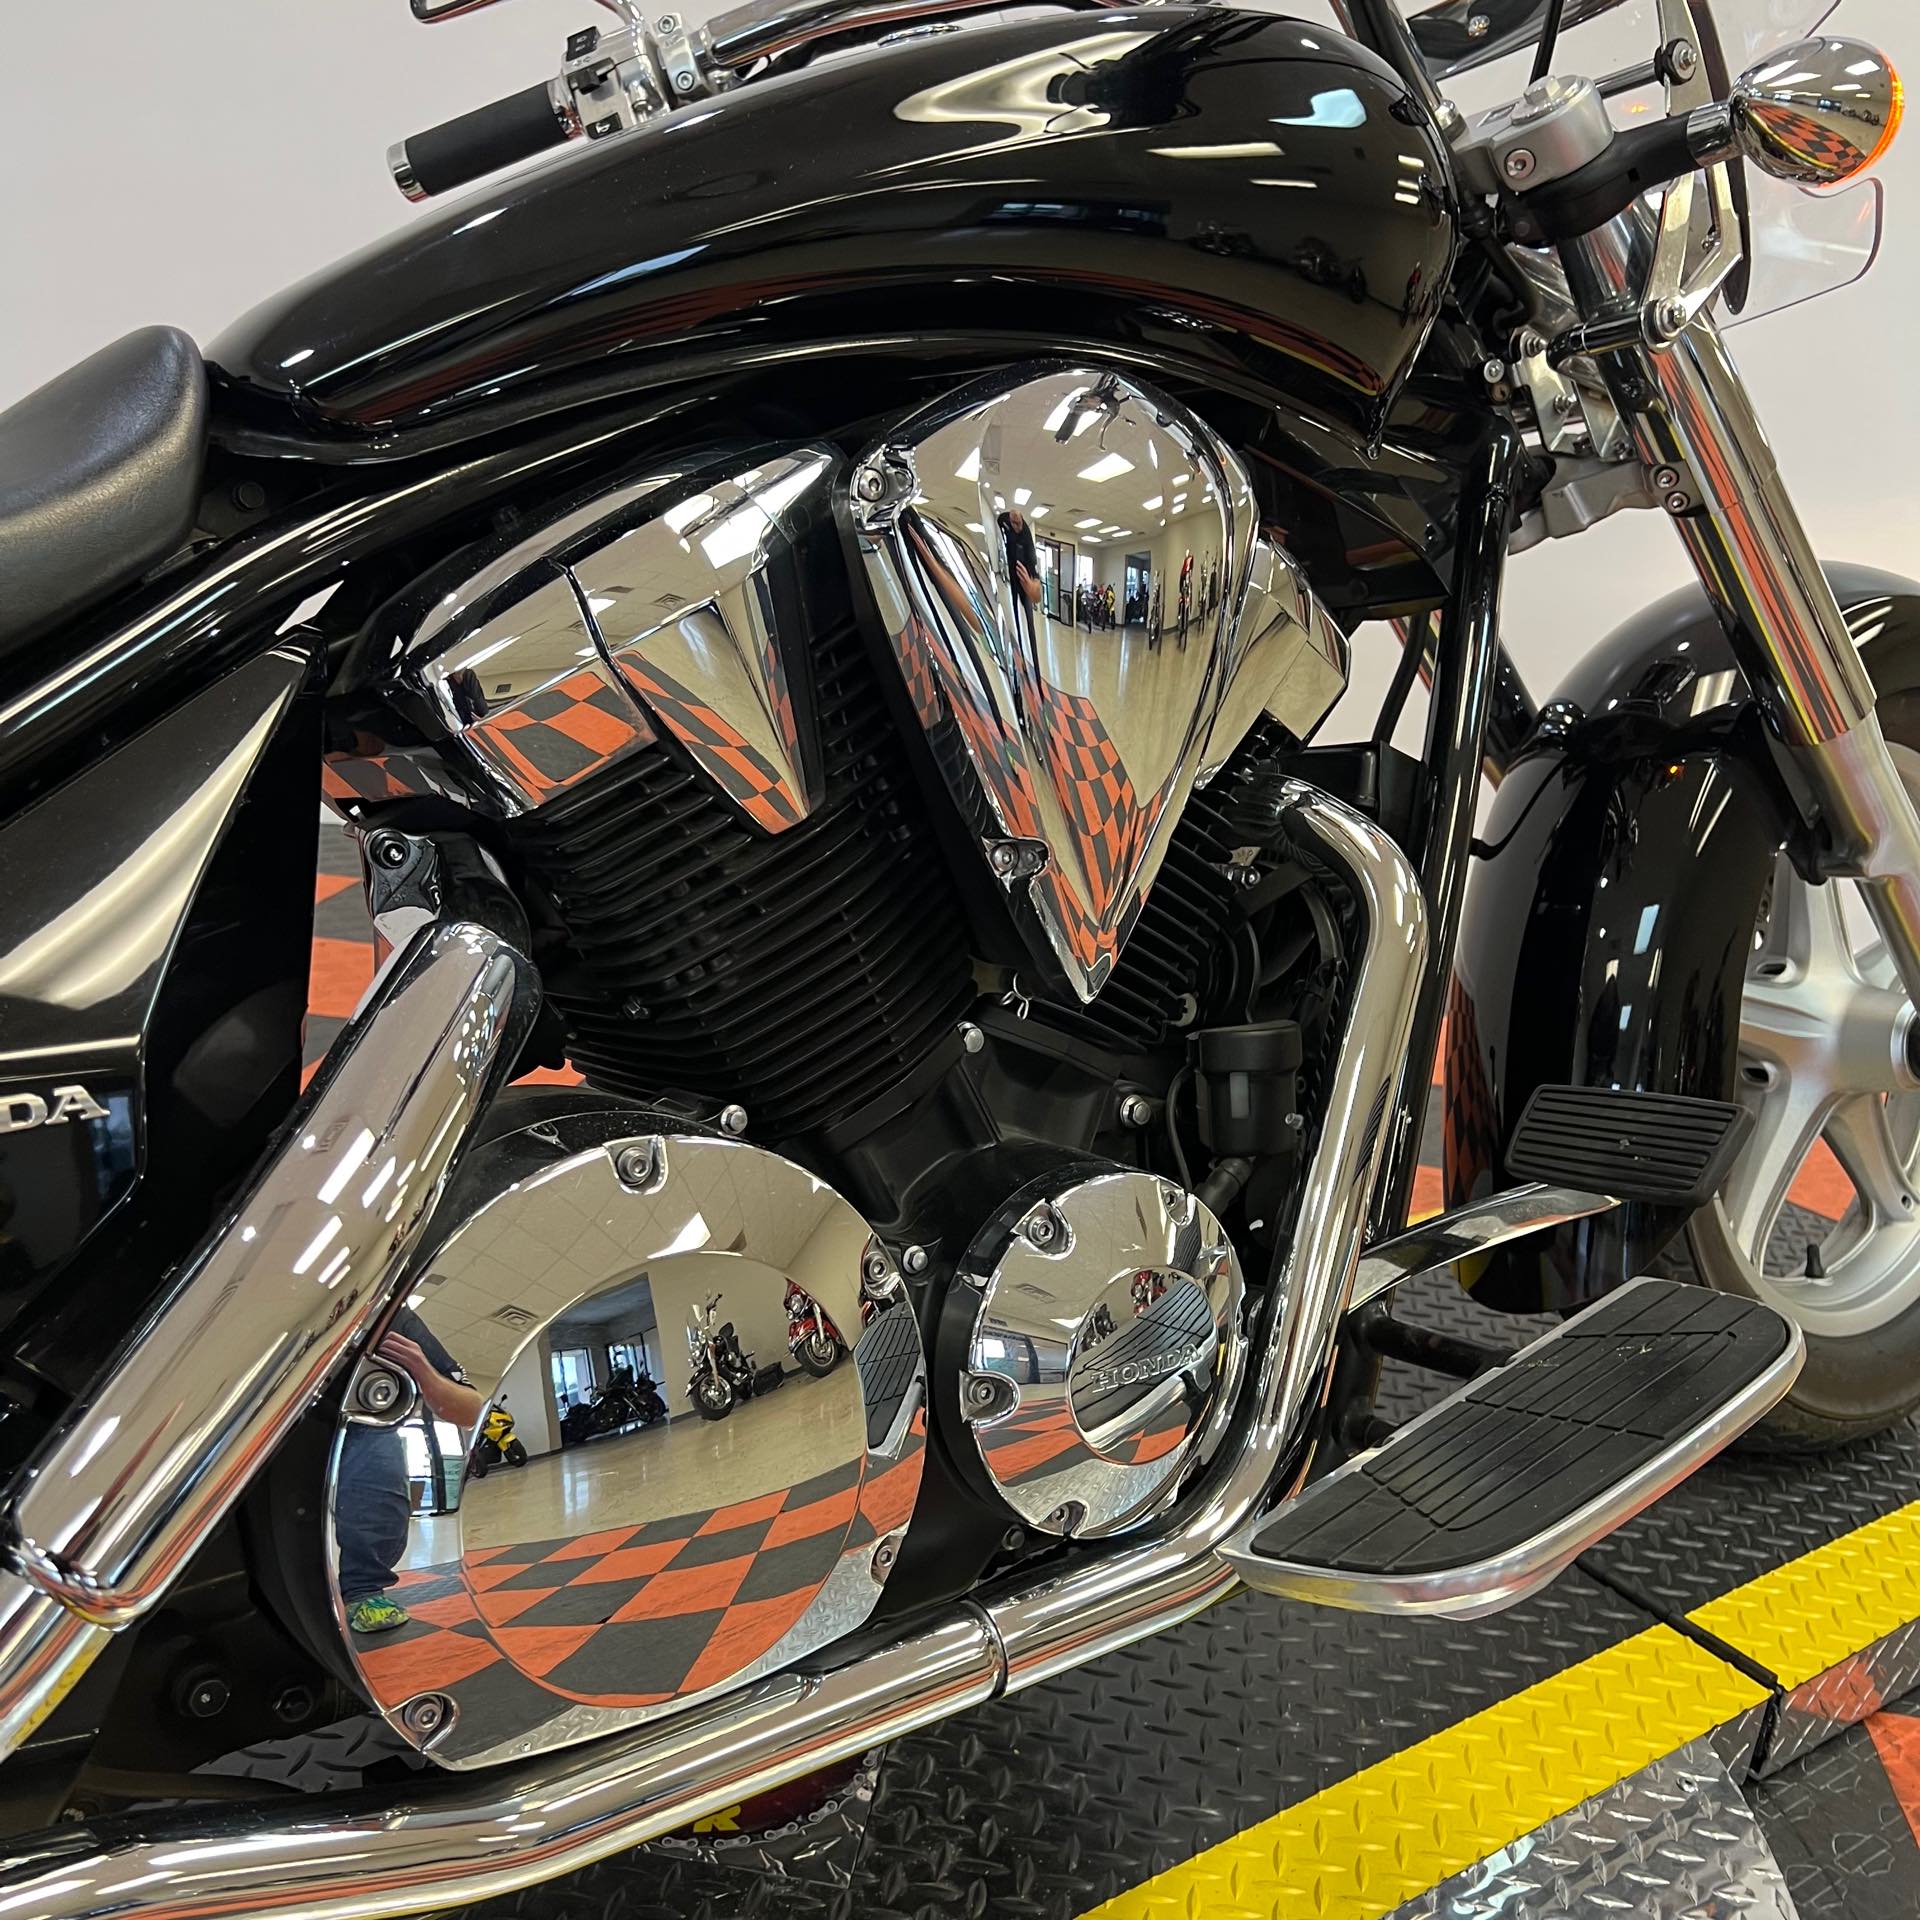 2015 HONDA VT1300CTA at Harley-Davidson of Indianapolis